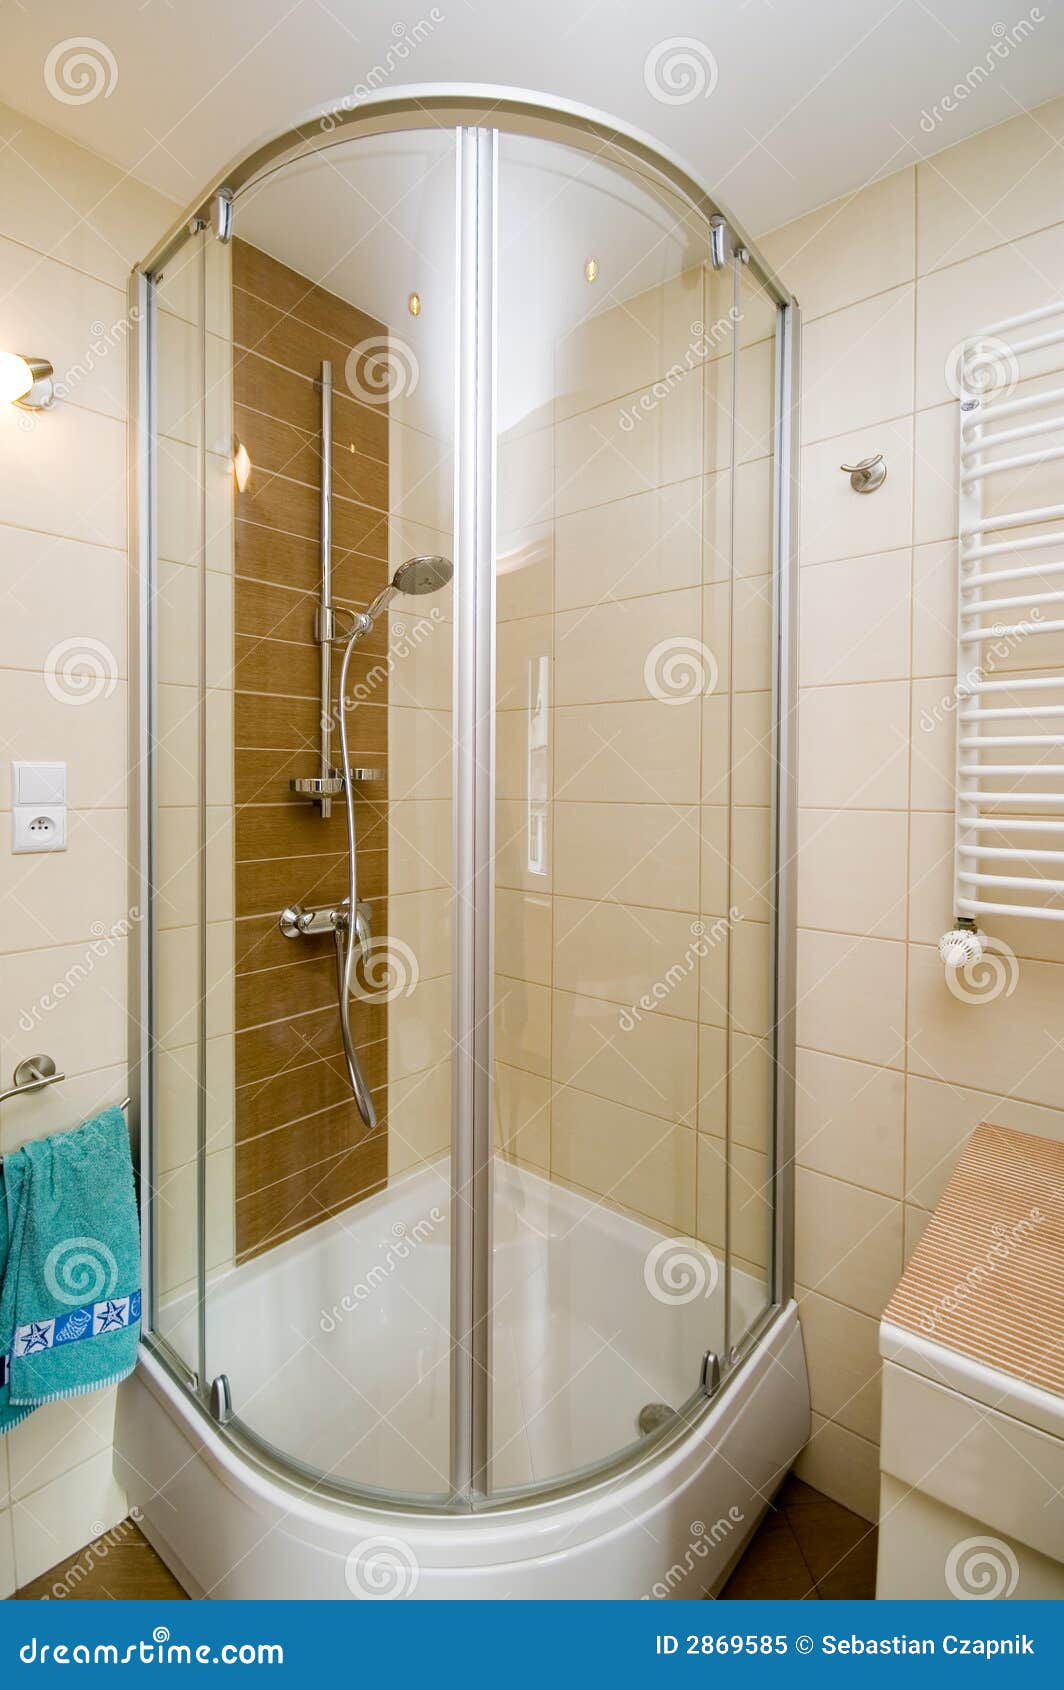 modern shower cabin